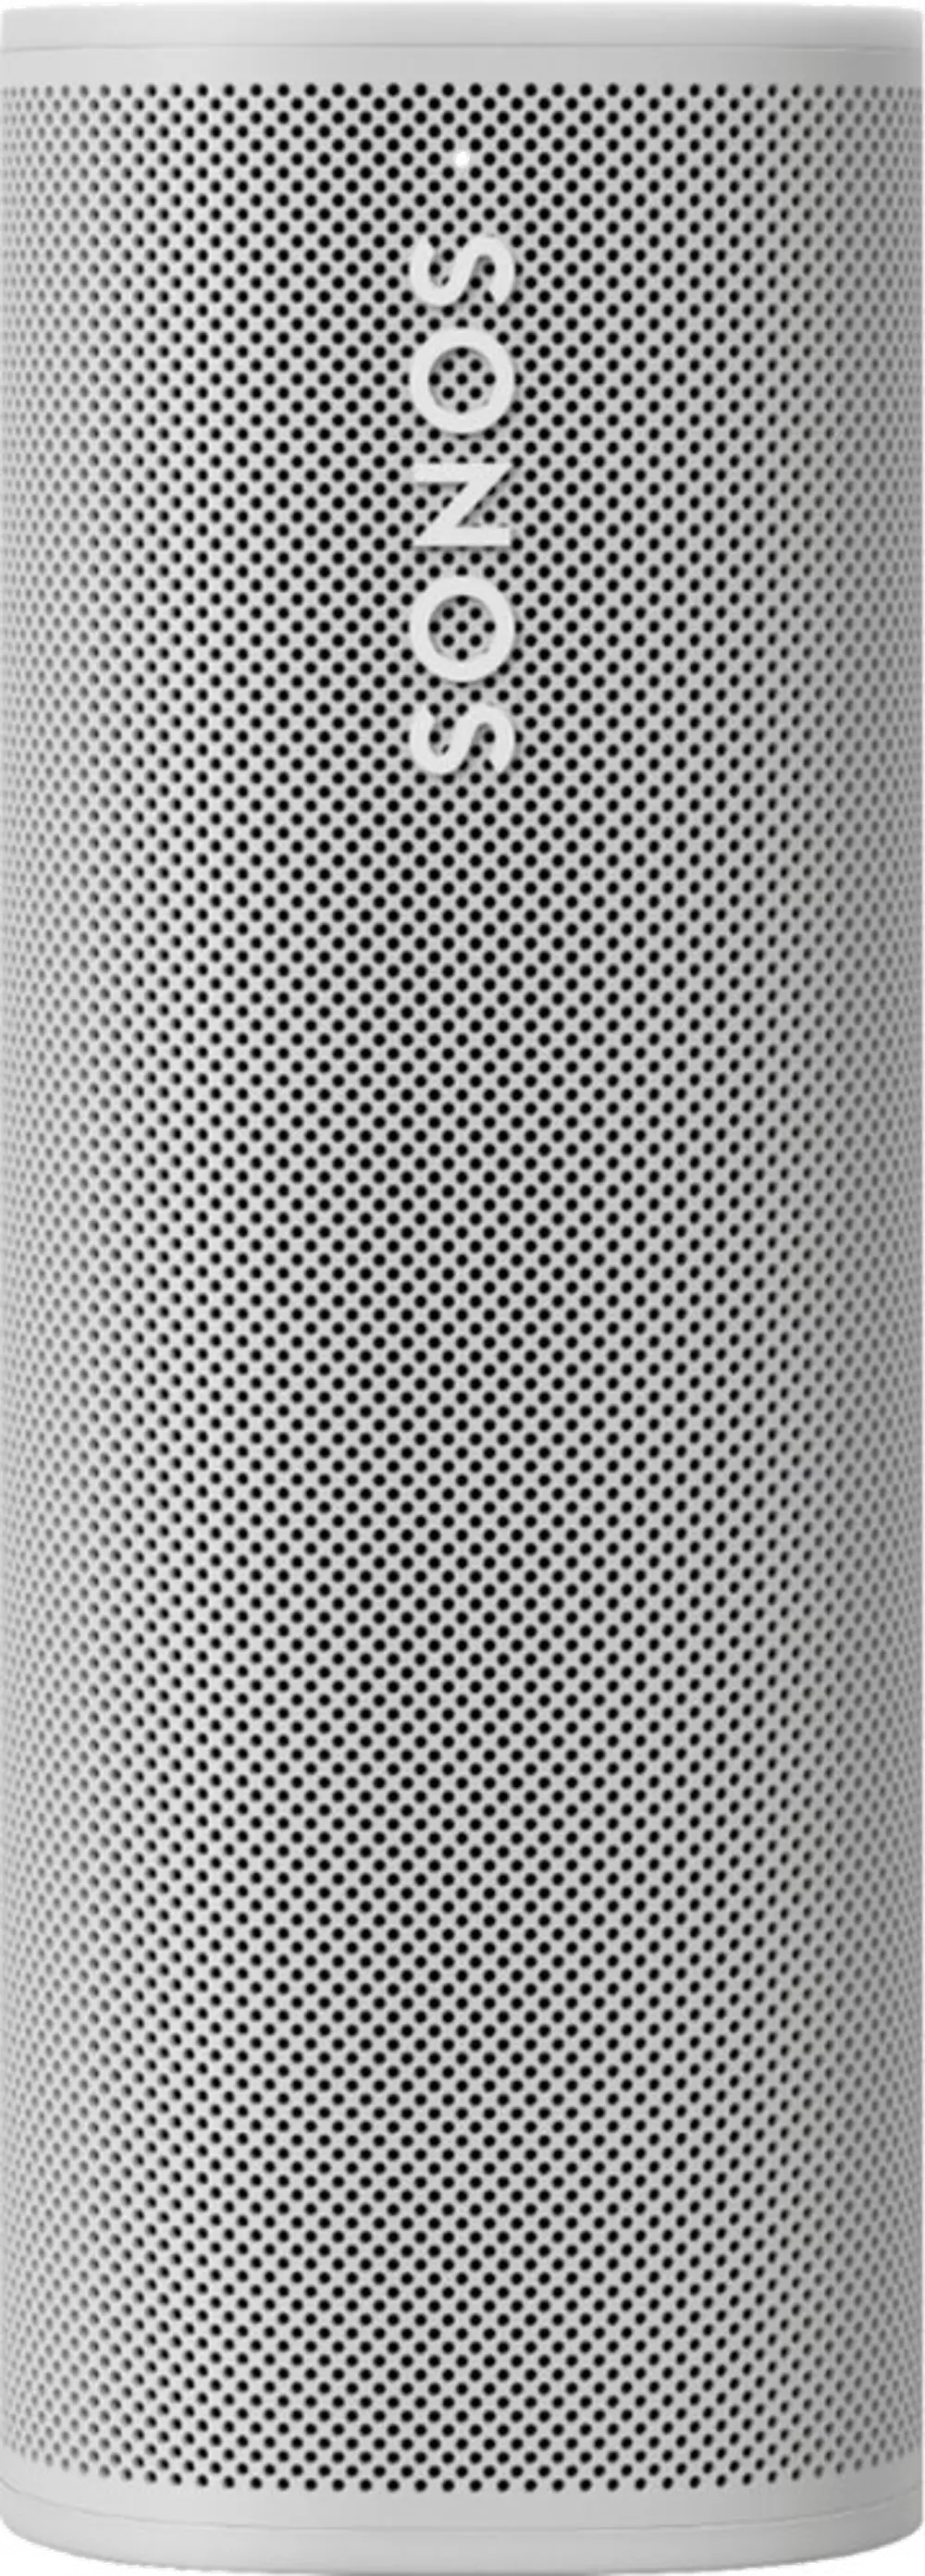 ROAM1US1 WHITE SPEAKER Sonos Roam White Waterproof Portable Speaker-1